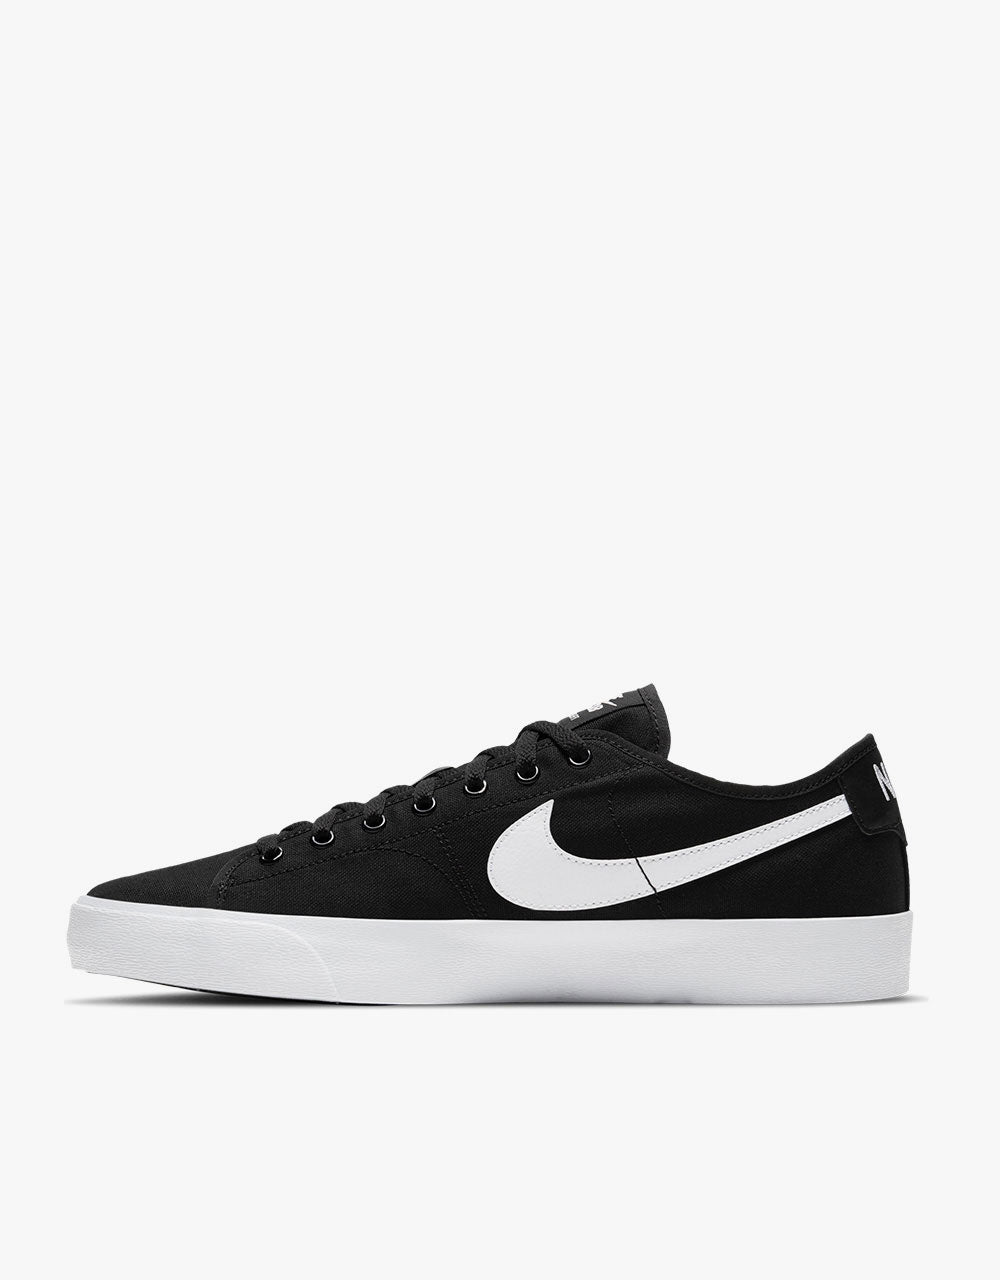 Nike SB BLZR Court Skate Shoes - Black/White-Black-Gum Light Brown